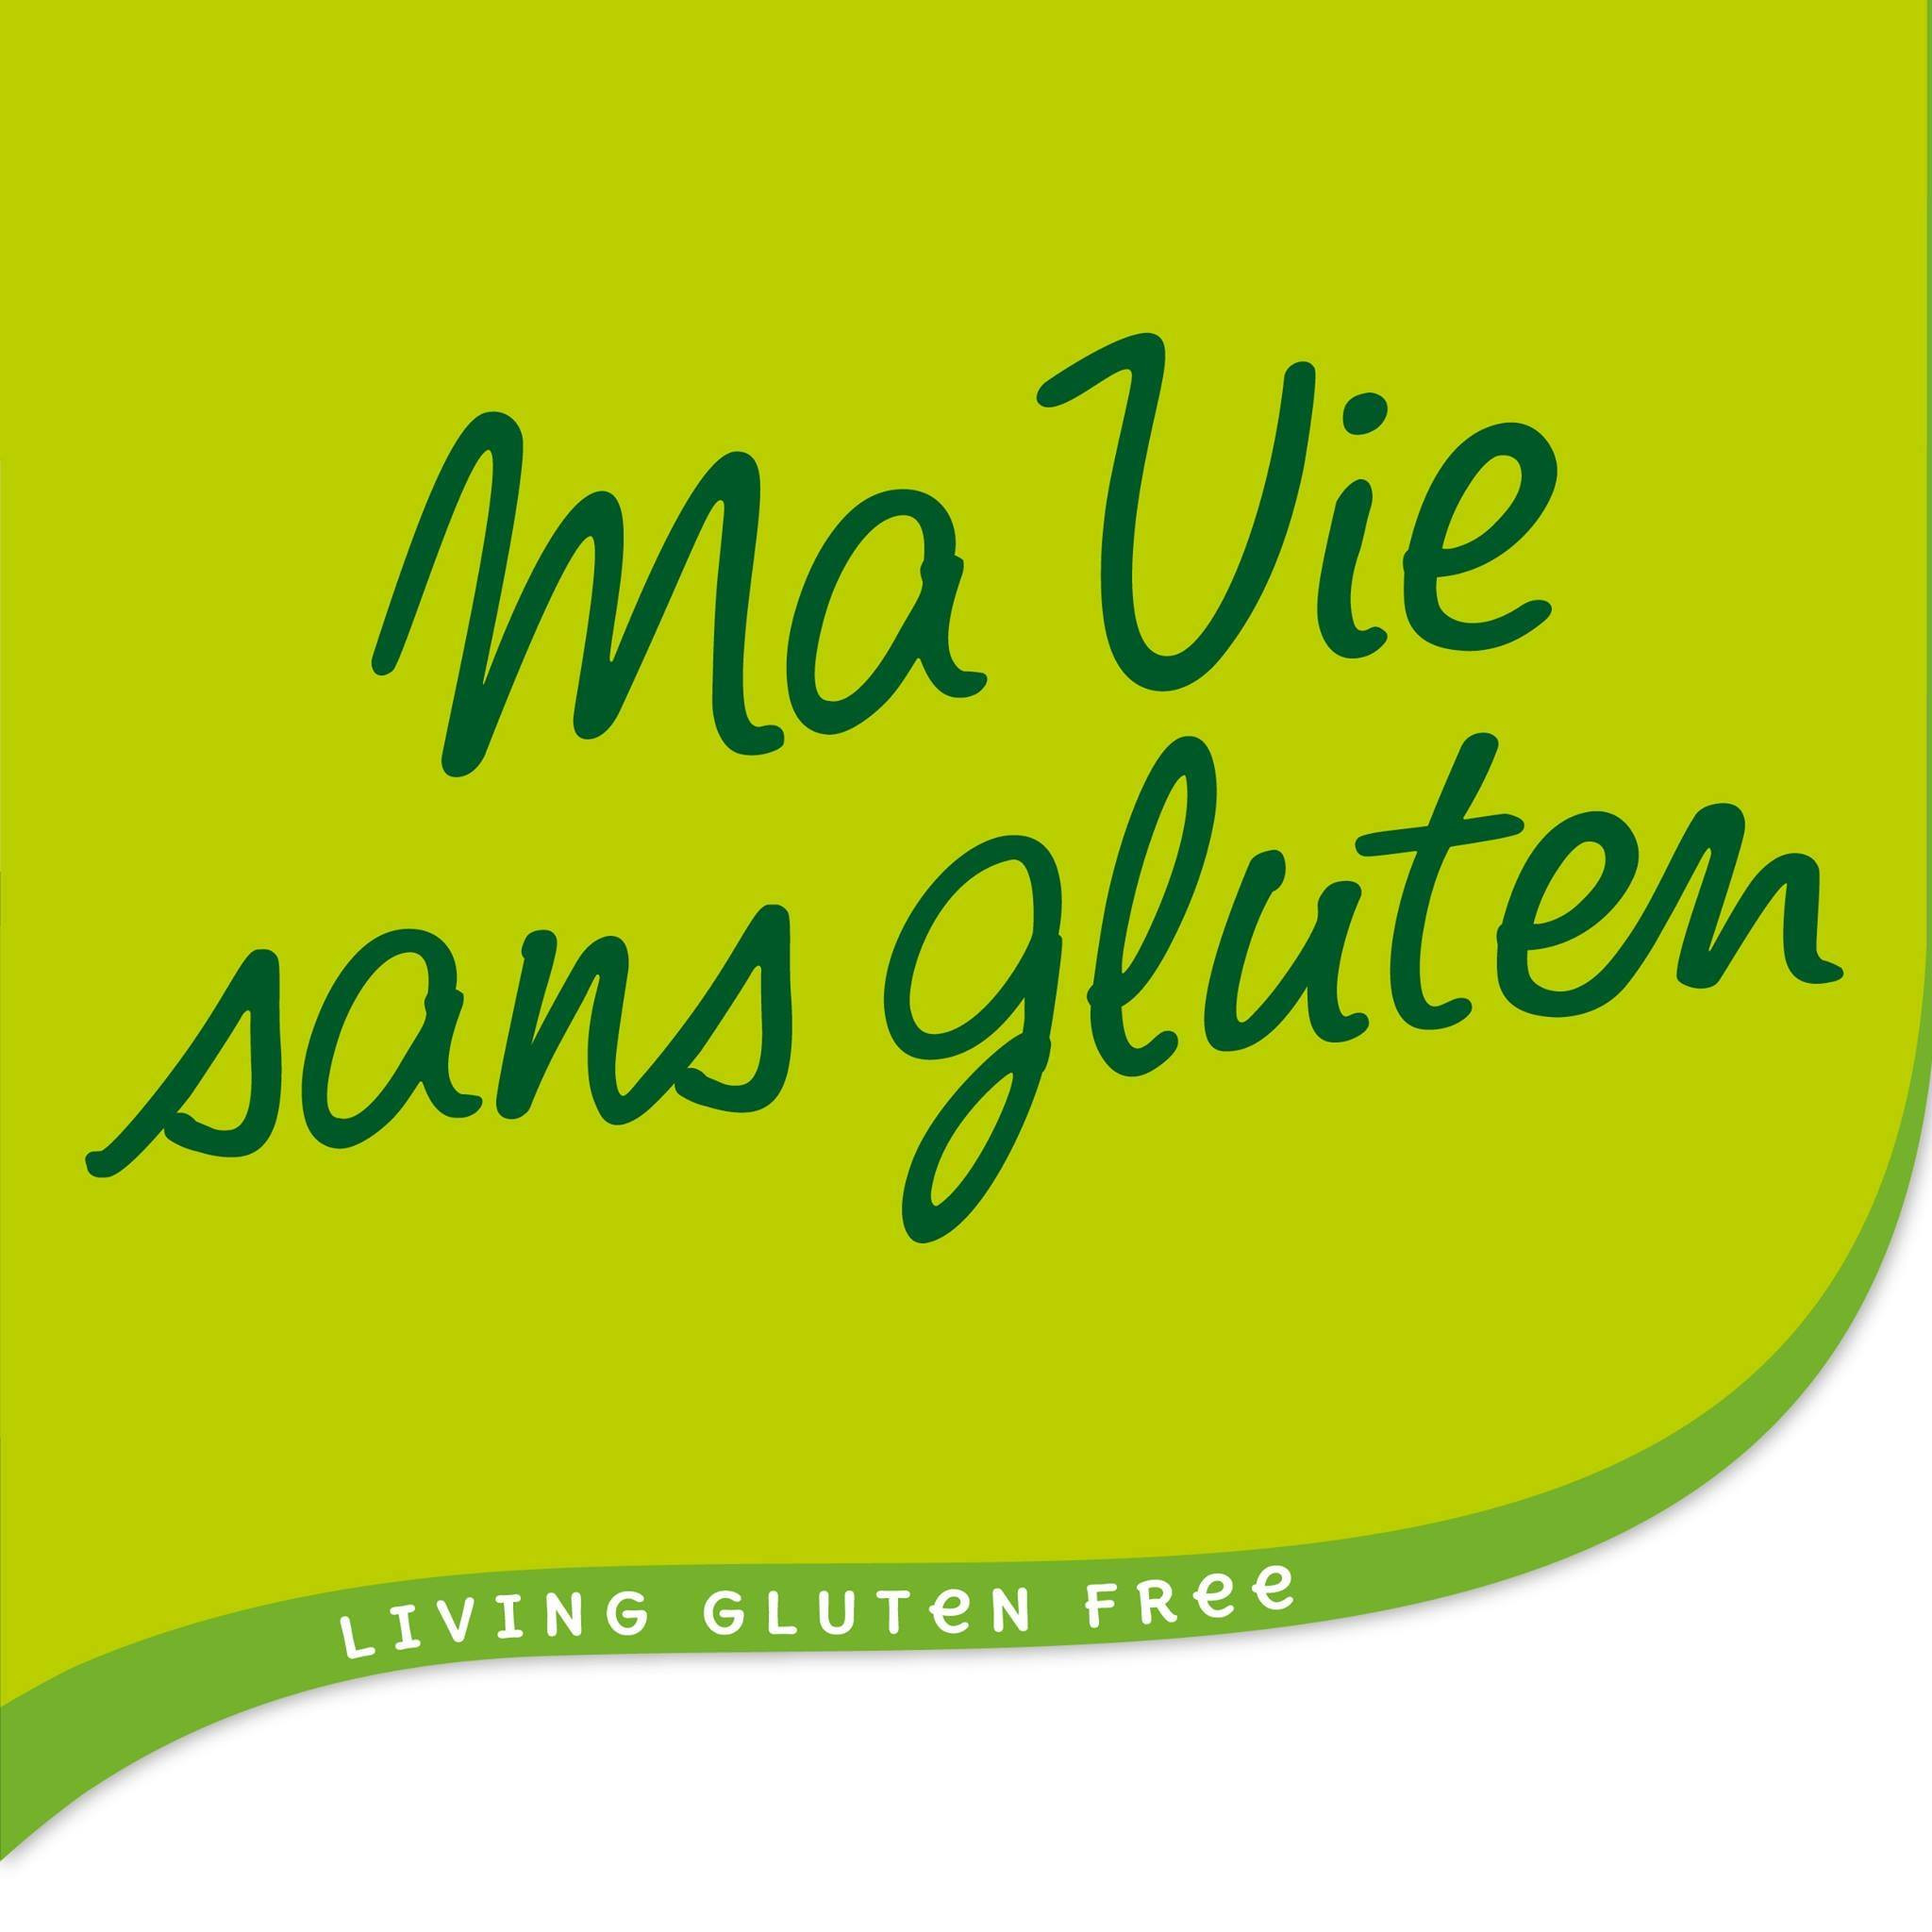 Ma vie sans gluten – Farines – Farine de millet 500 g - Ma Vie Sans Gluten